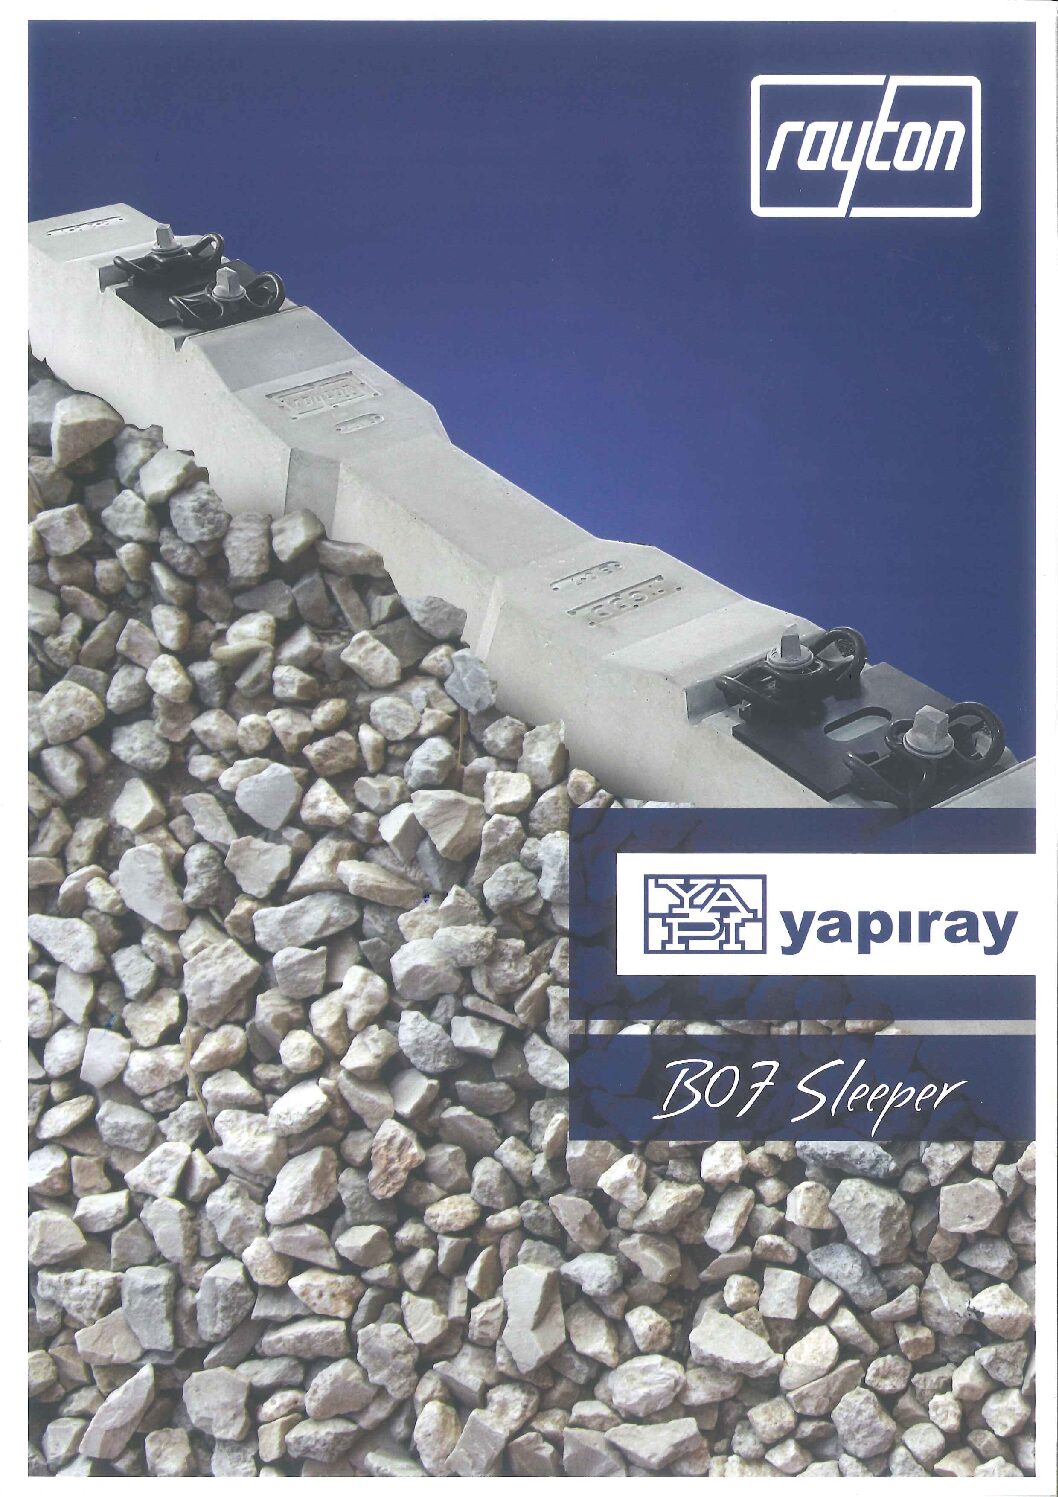 YAPIRAY – B07 Sleeper